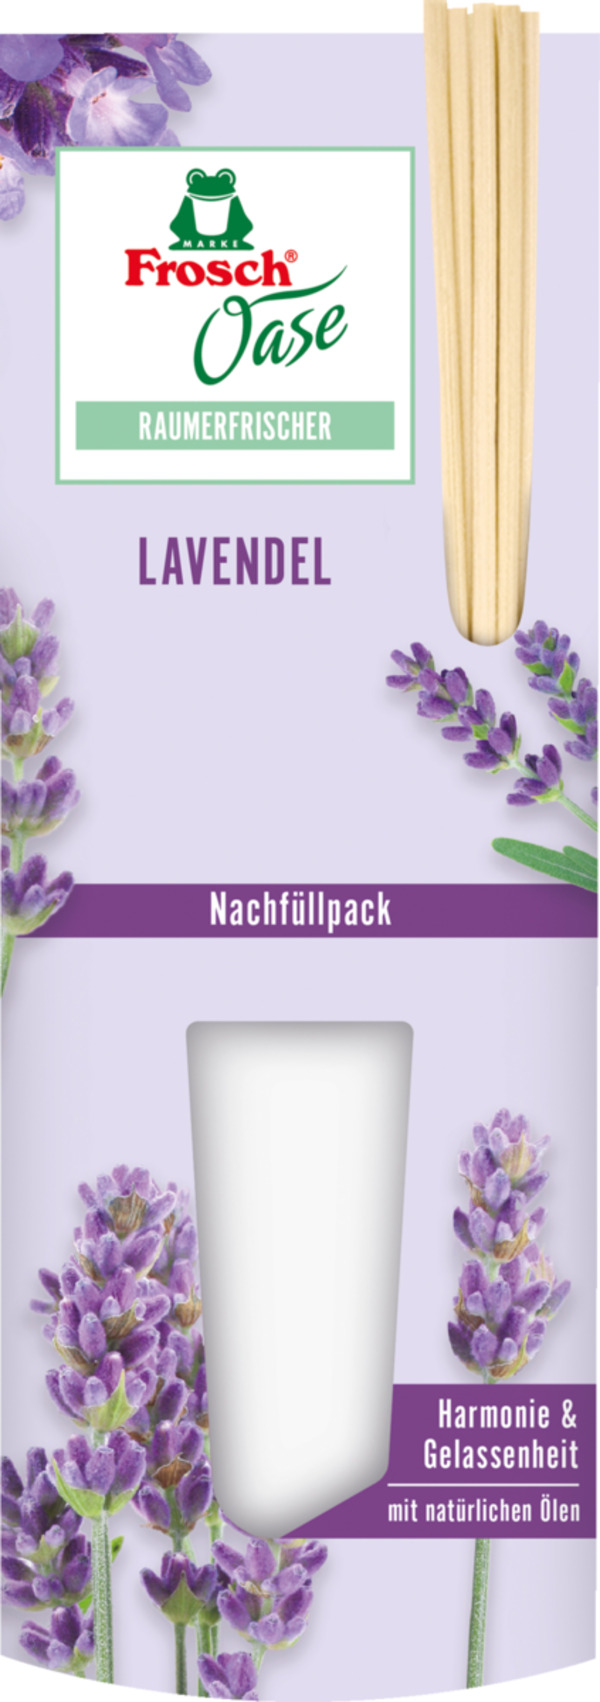 Bild 1 von Frosch Oase Raumerfrischer Lavendeltraum Nachfüllpack 3.10 EUR/100 ml